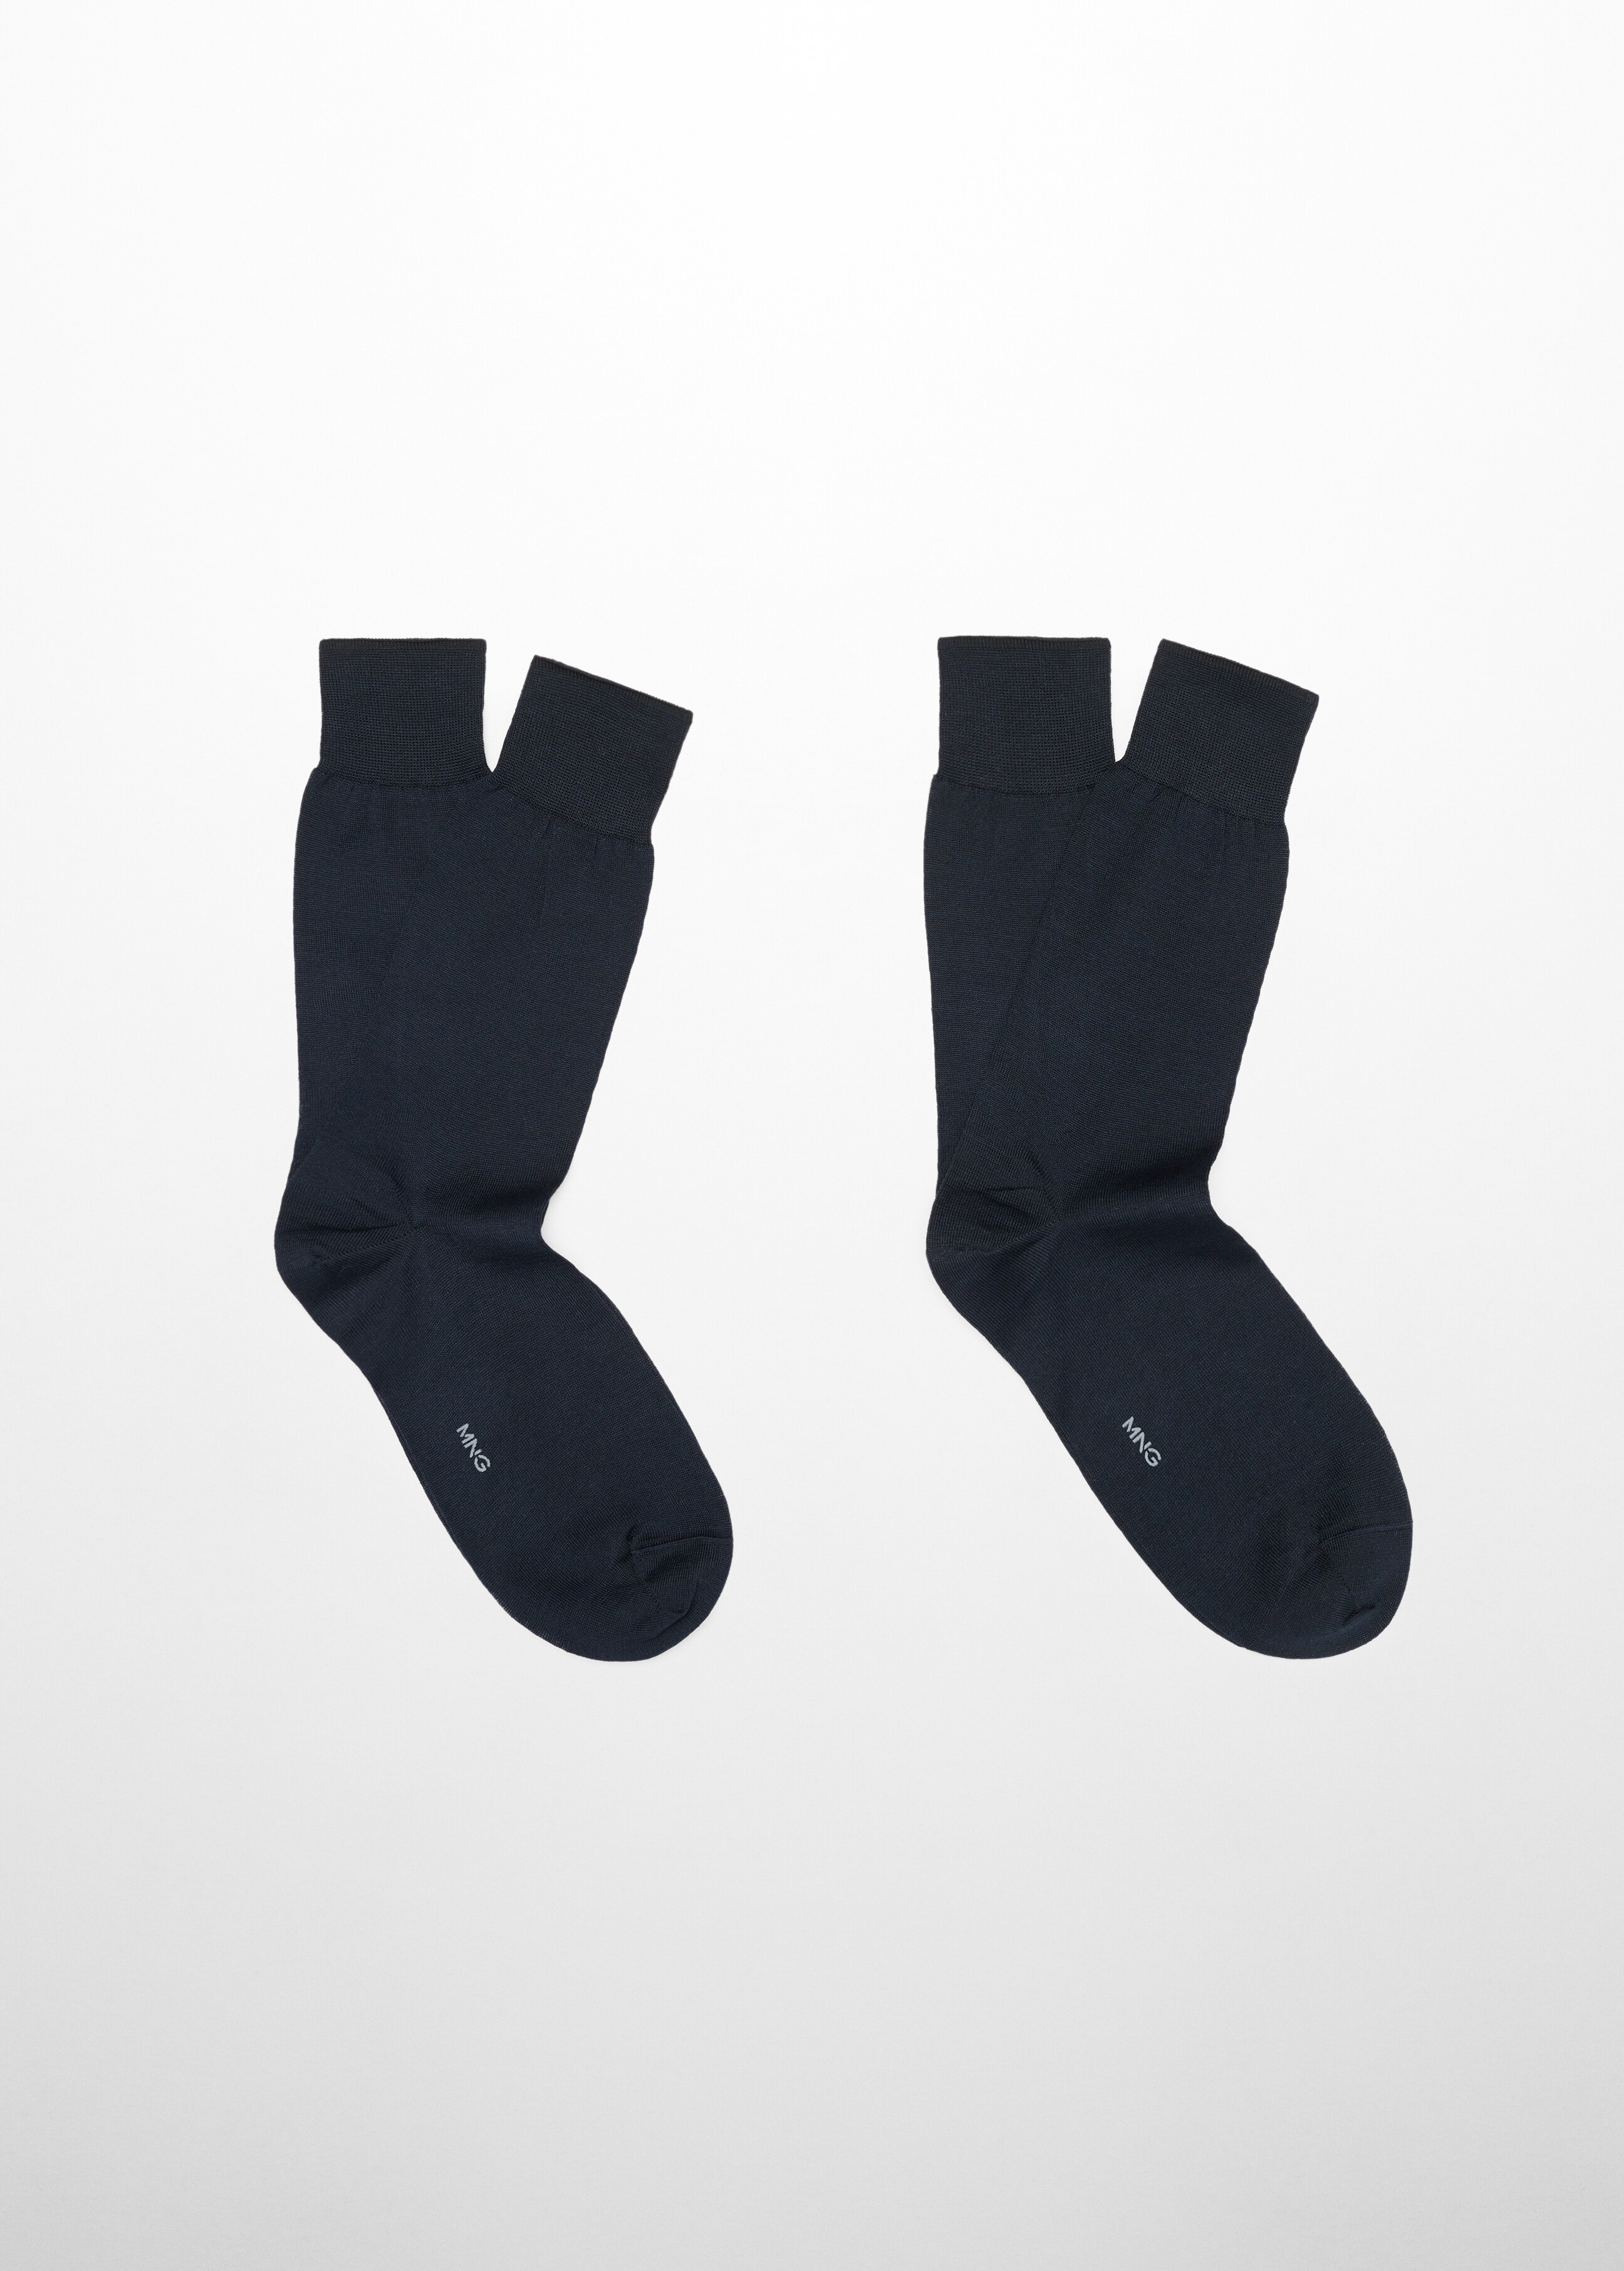 100% pamut, egyszínű zokni 2 db-os csomagban - Termék modell nélkül